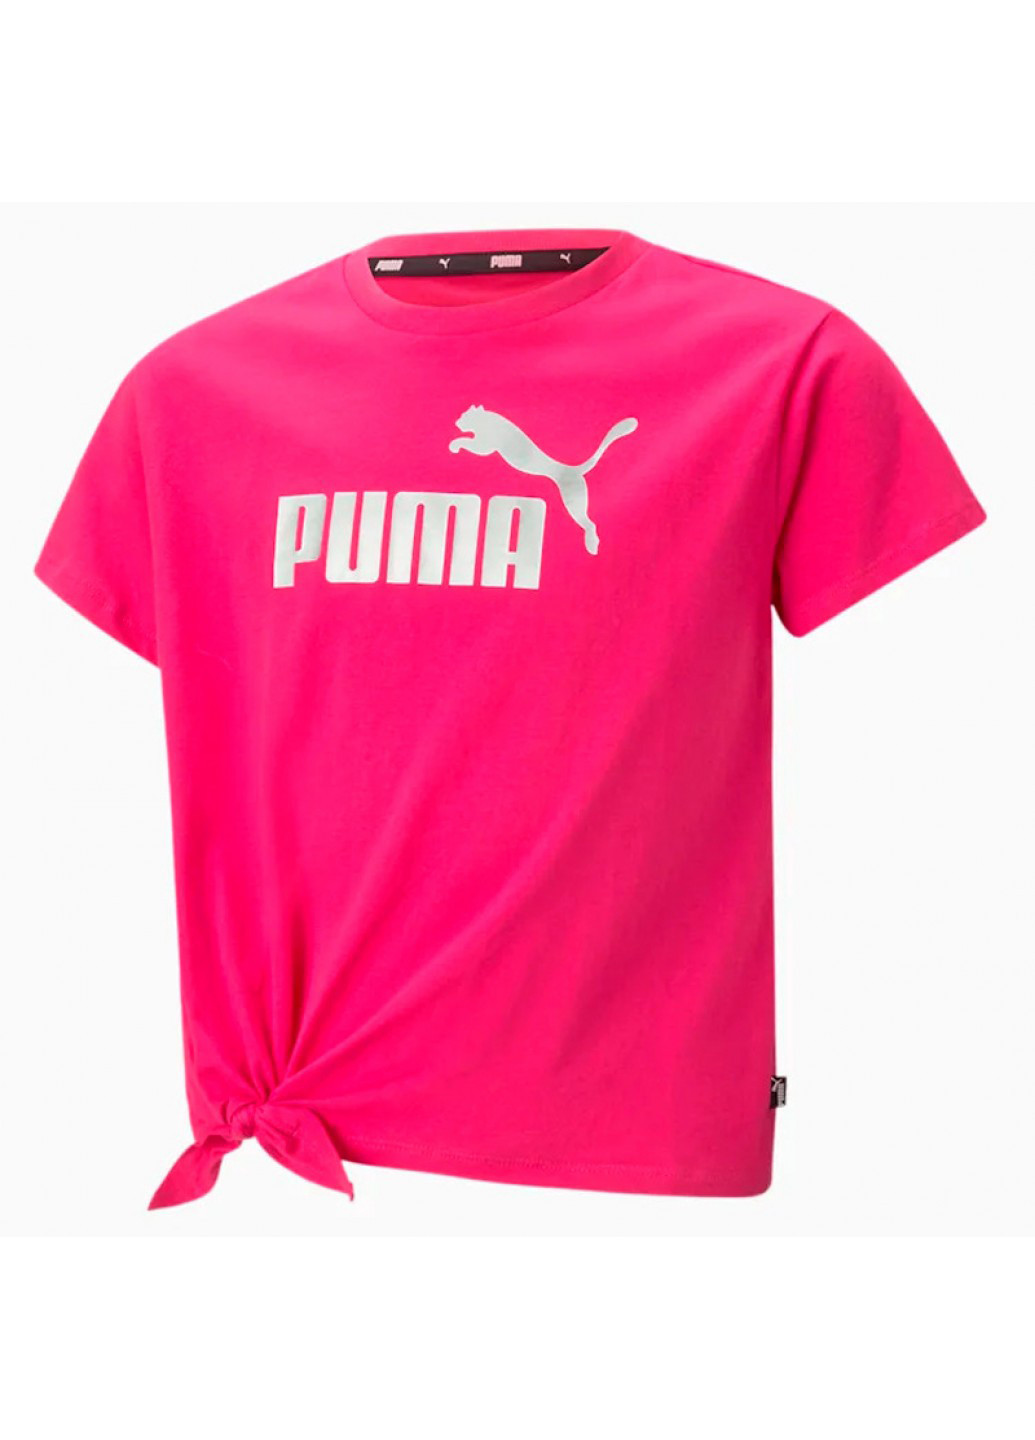 Малинова літня футболка Puma 846956-64